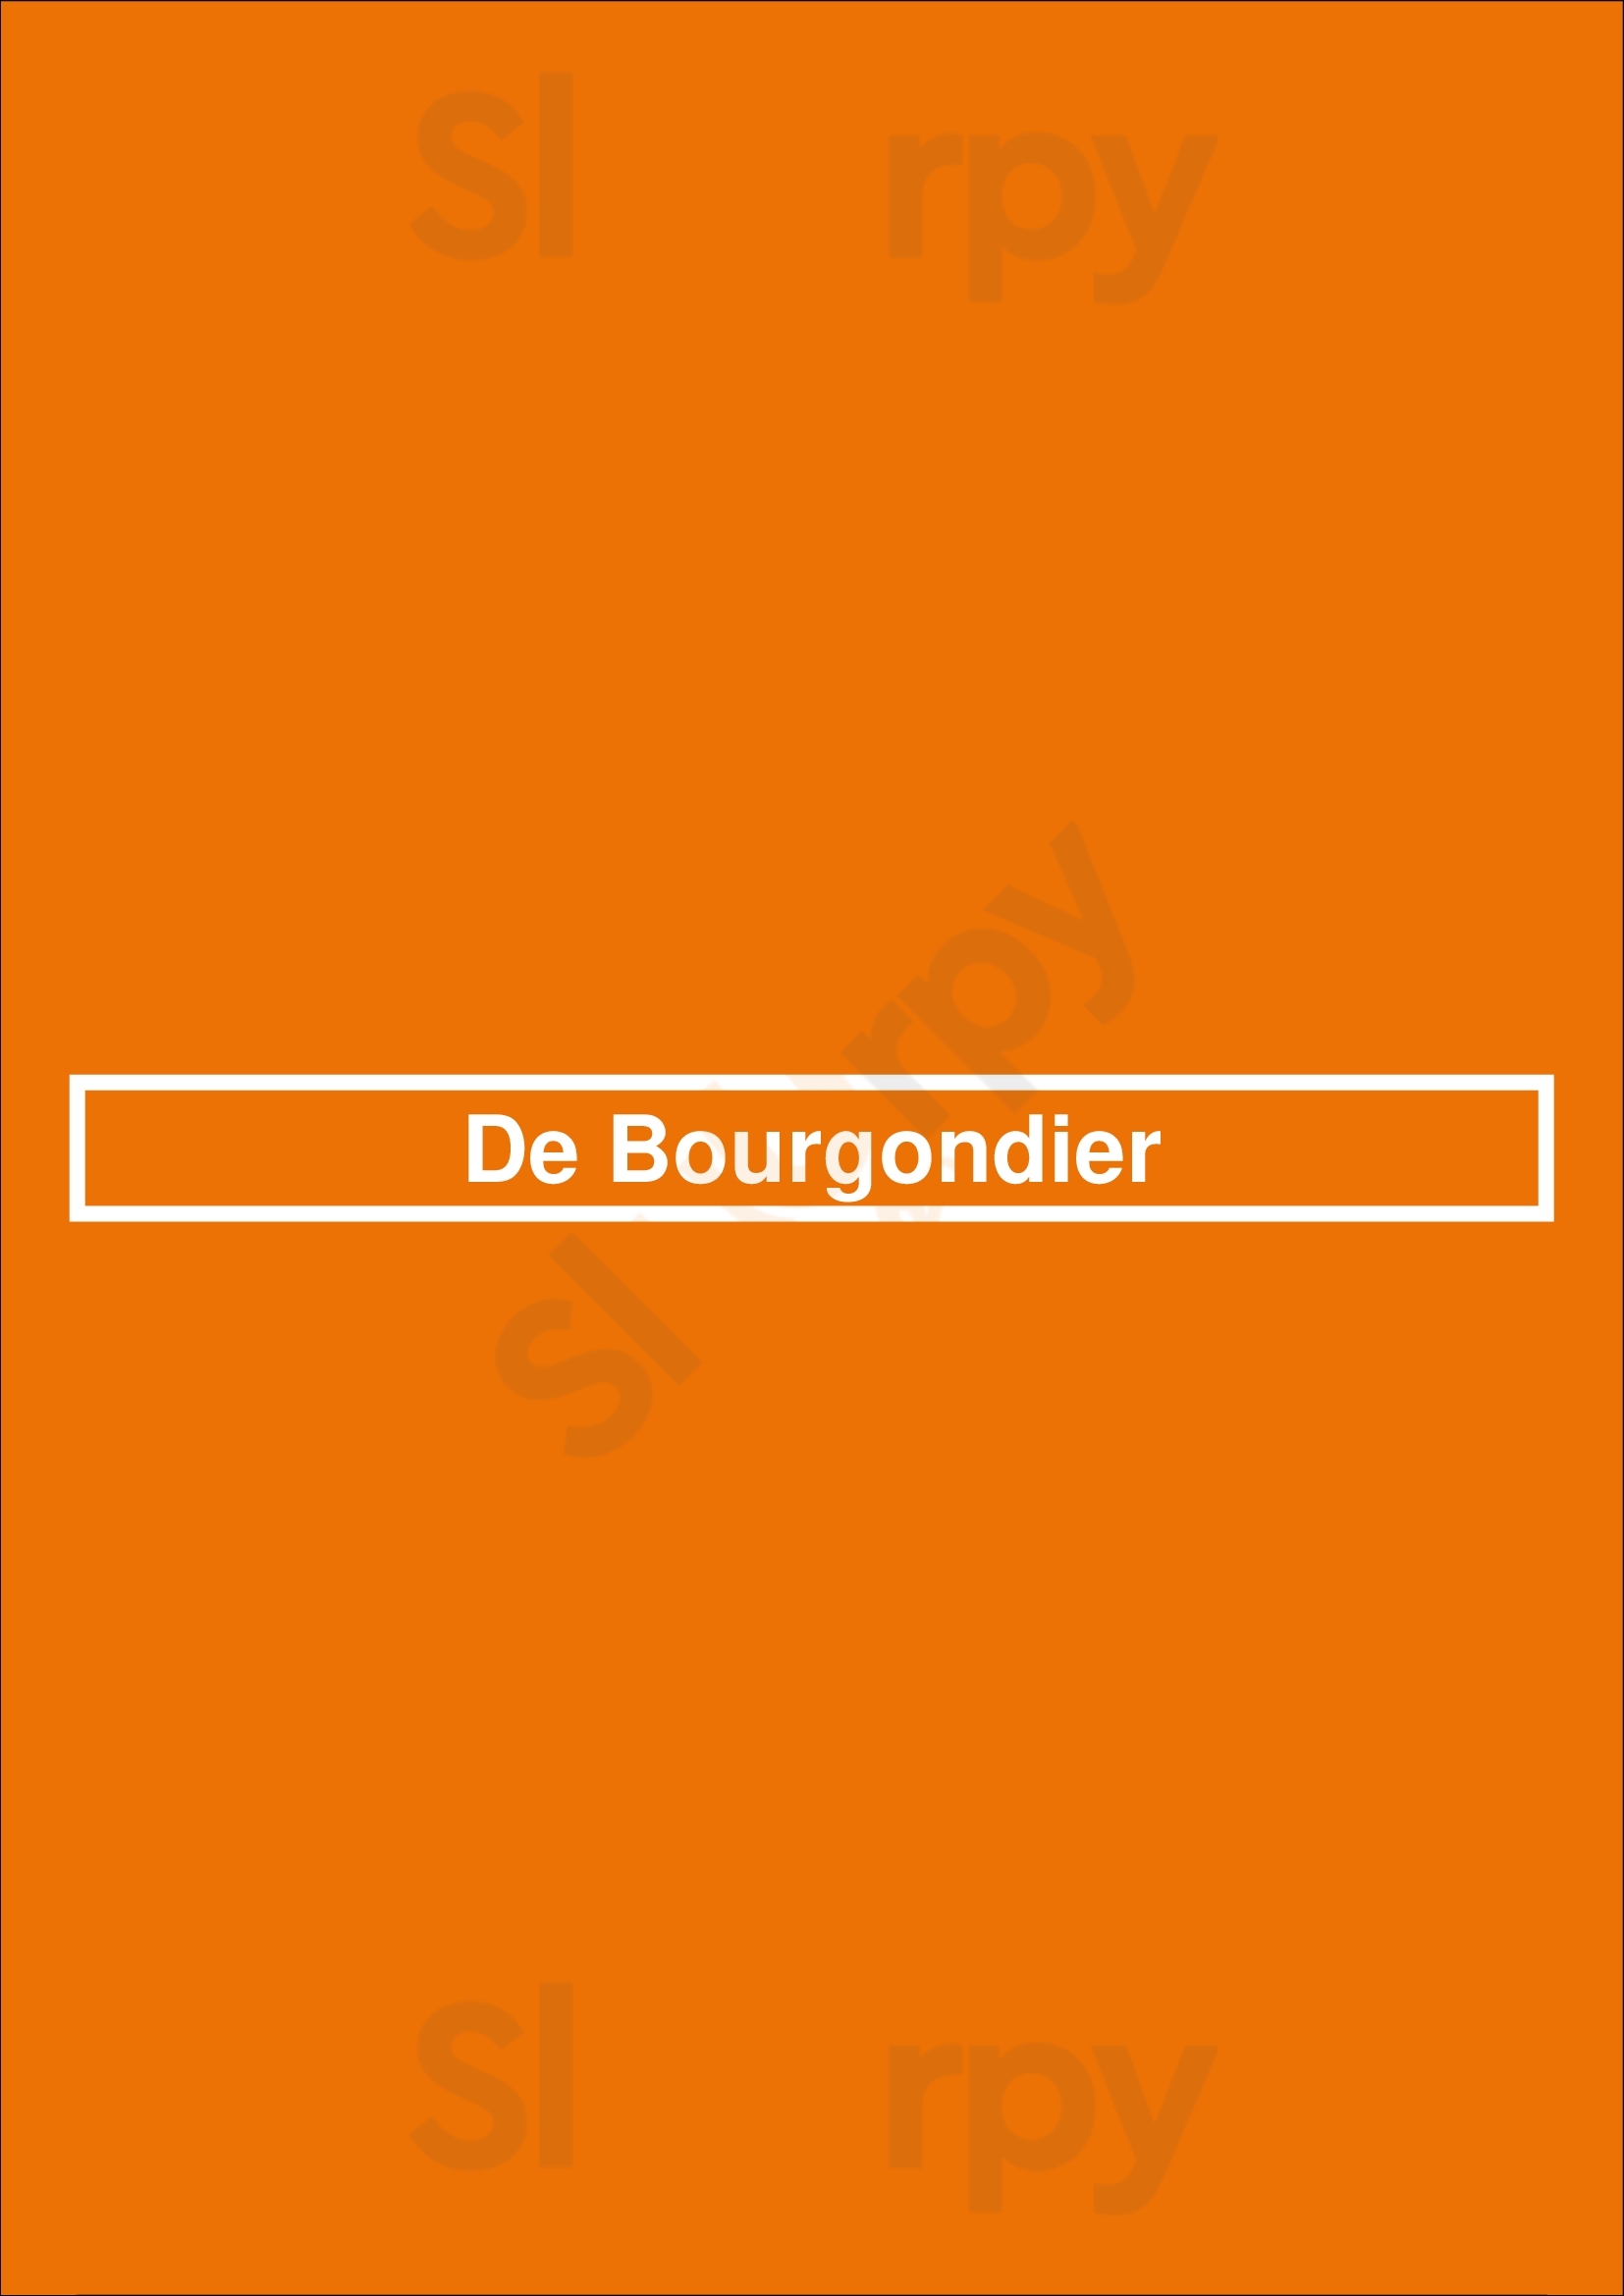 De Bourgondier Hoorn Menu - 1